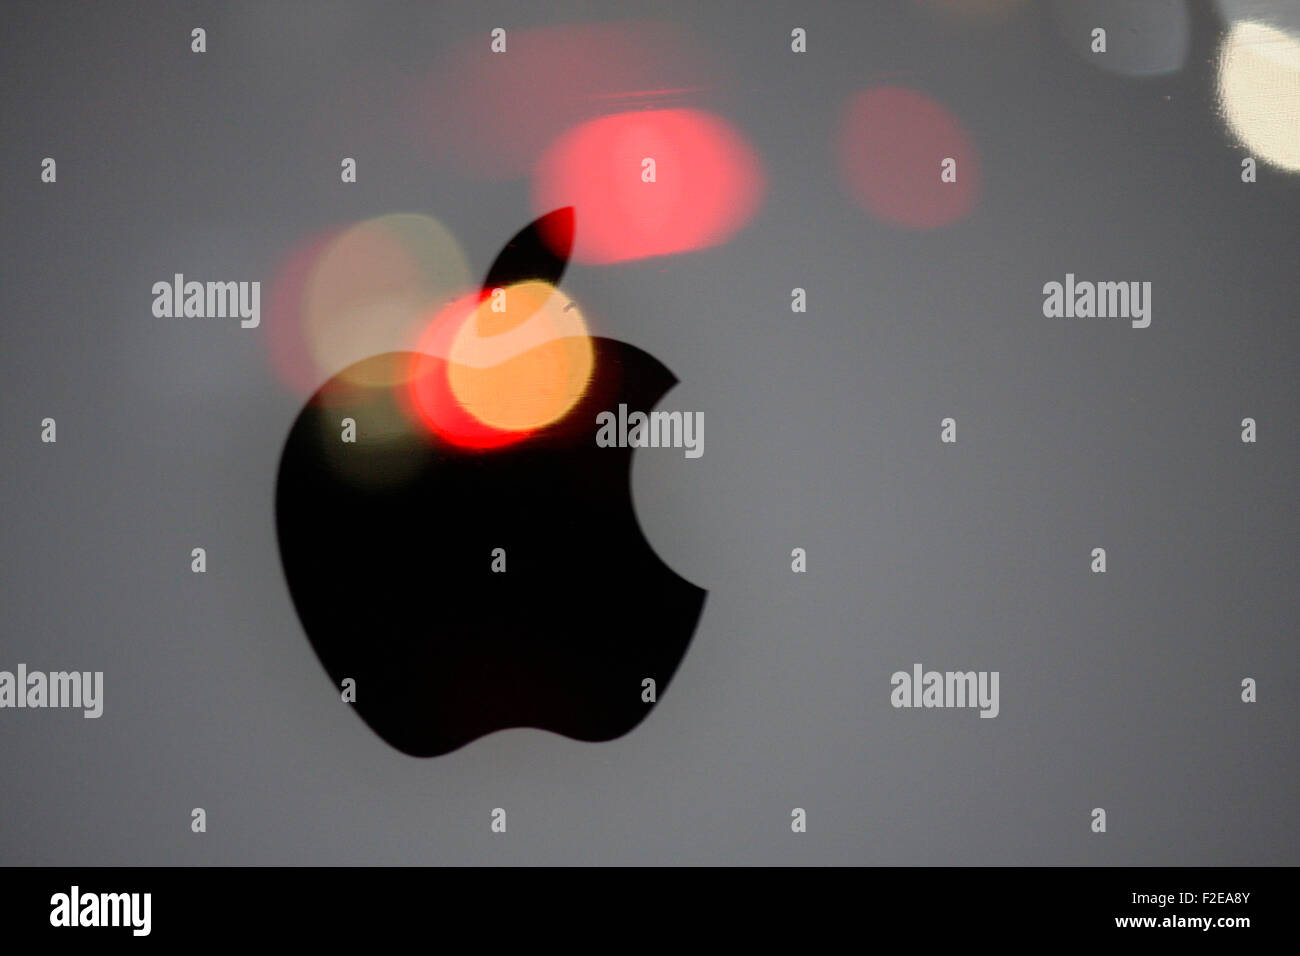 Novembre 2013 - BERLIN : marques : le logo de l'entreprise technologie 'Apple', Berlin. Banque D'Images